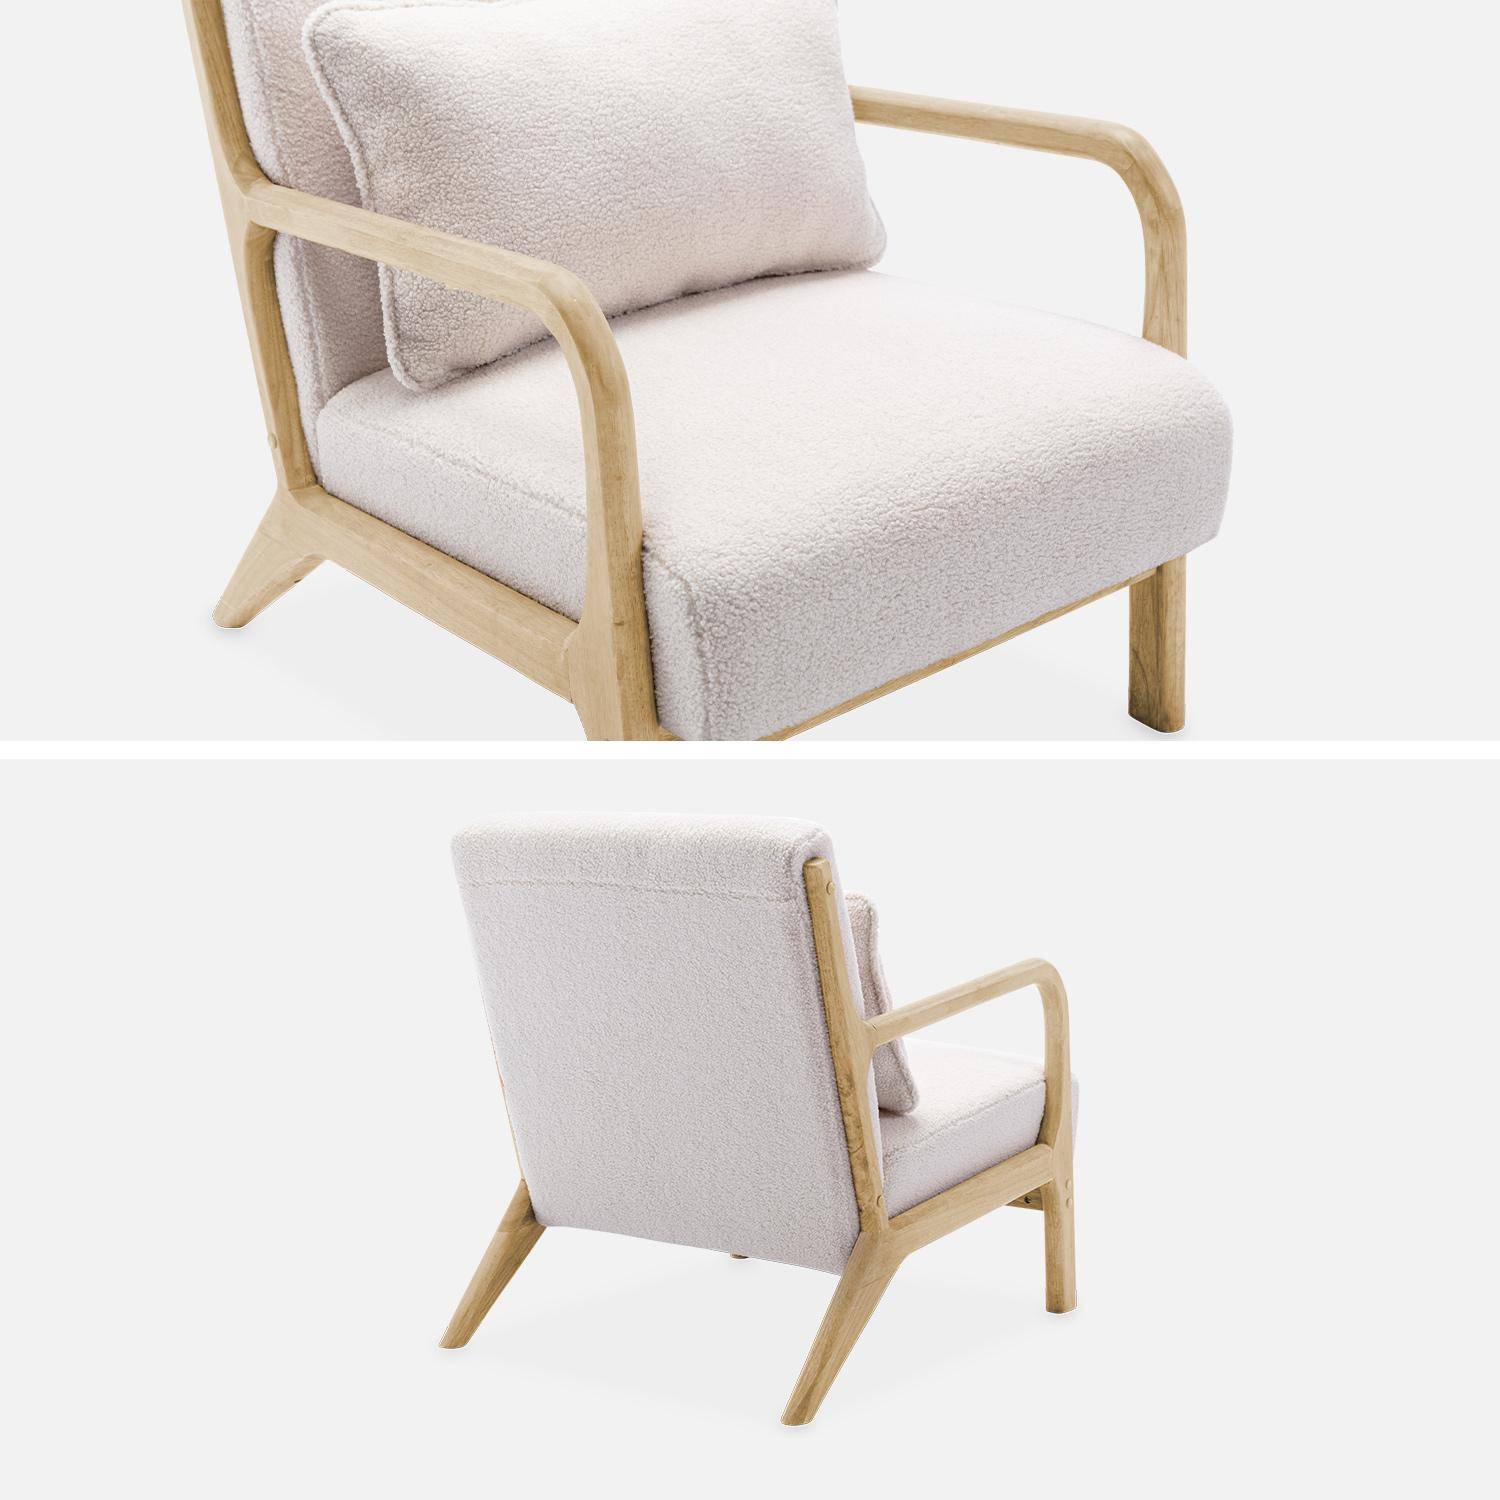 Sillón de rizos blancos, madera y tela, 1 asiento recto fijo, patas de compás escandinavas, armazón de madera maciza, asiento cómodo Photo6